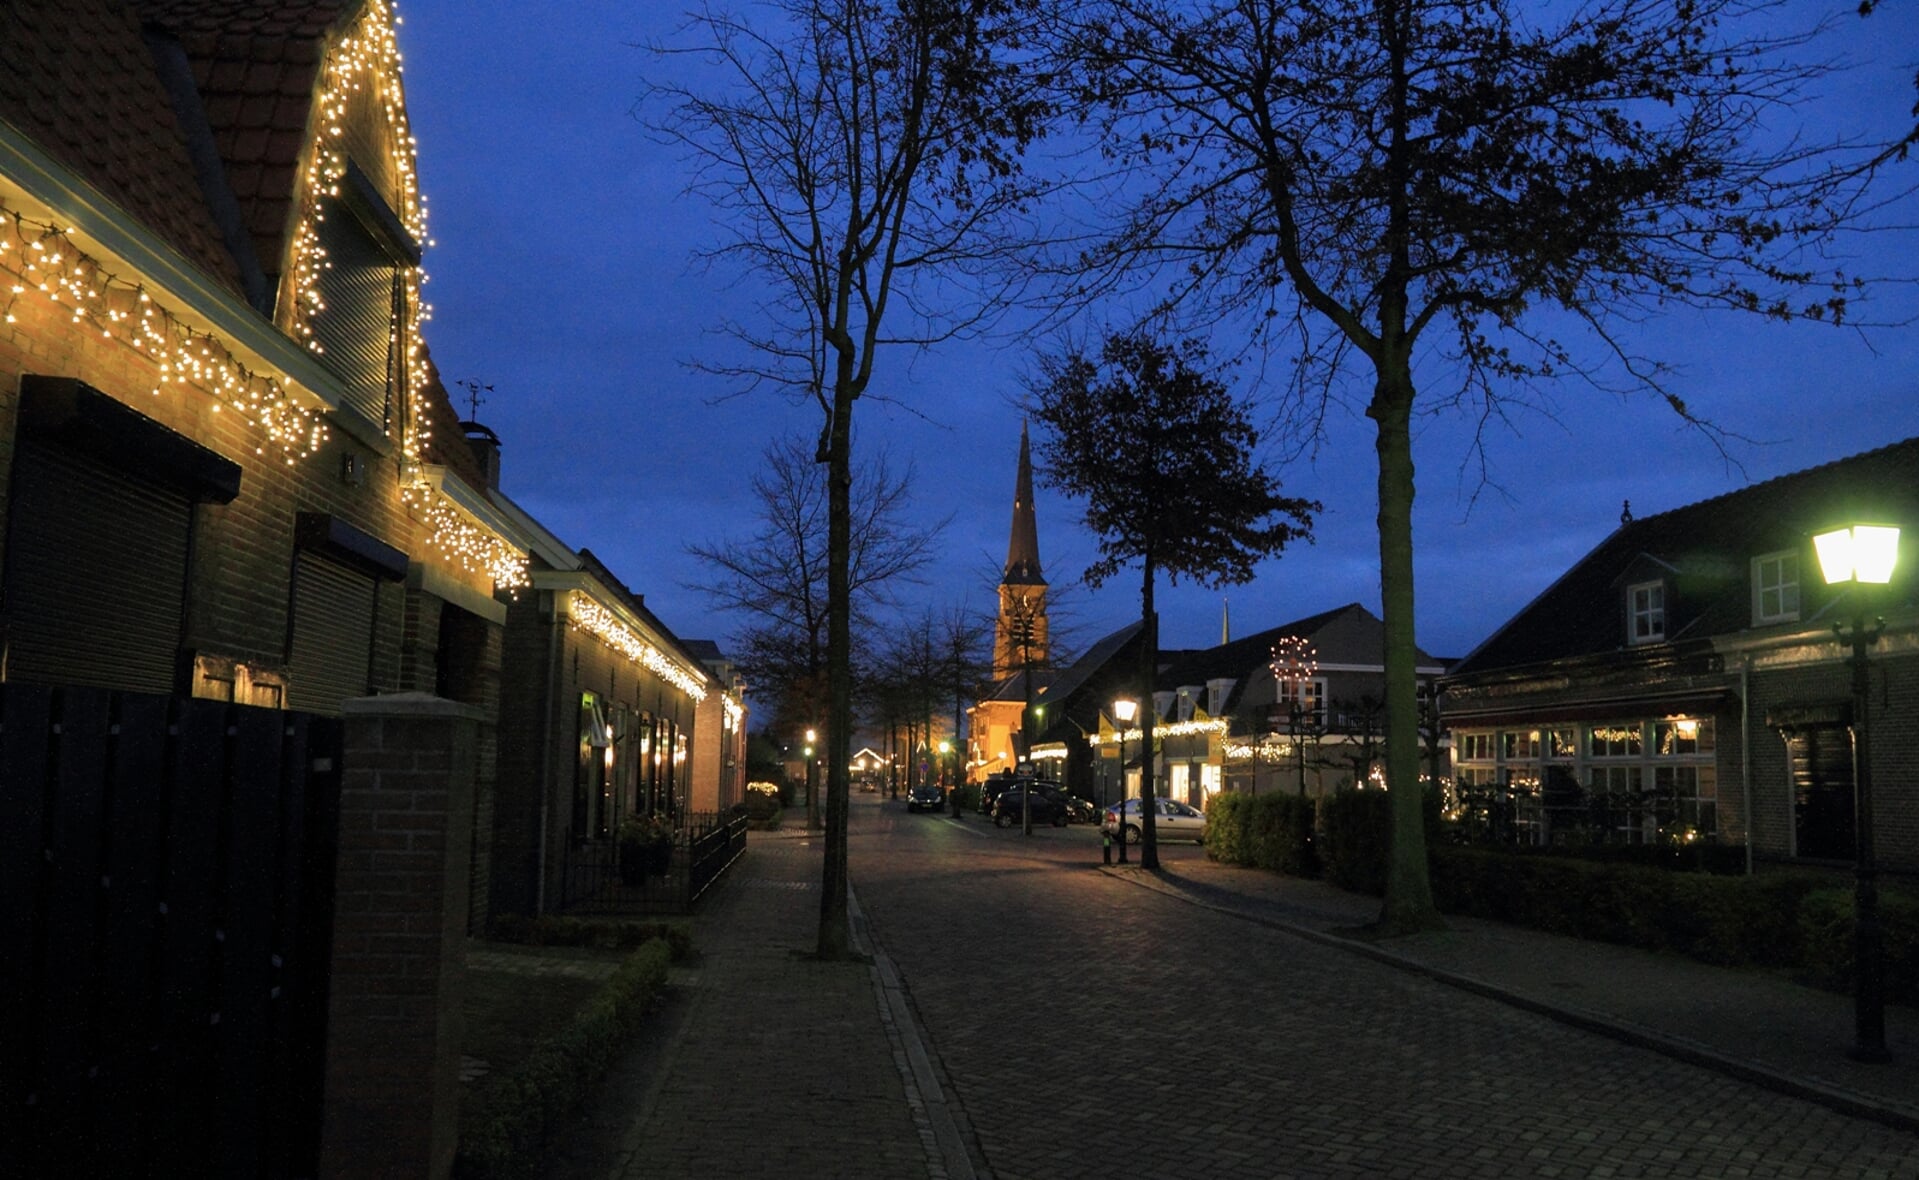 Het centrum van Liempde is al jaren sfeervol verlicht in december en januari. Om Liemt in het licht gestalte te geven, hangen vele vrijwilligers lampjes op in het dorp. Zaterdag 28 november om 17.00 uur start de twaalfde editie. (Foto: Ruud van Nooijen, 2016).  